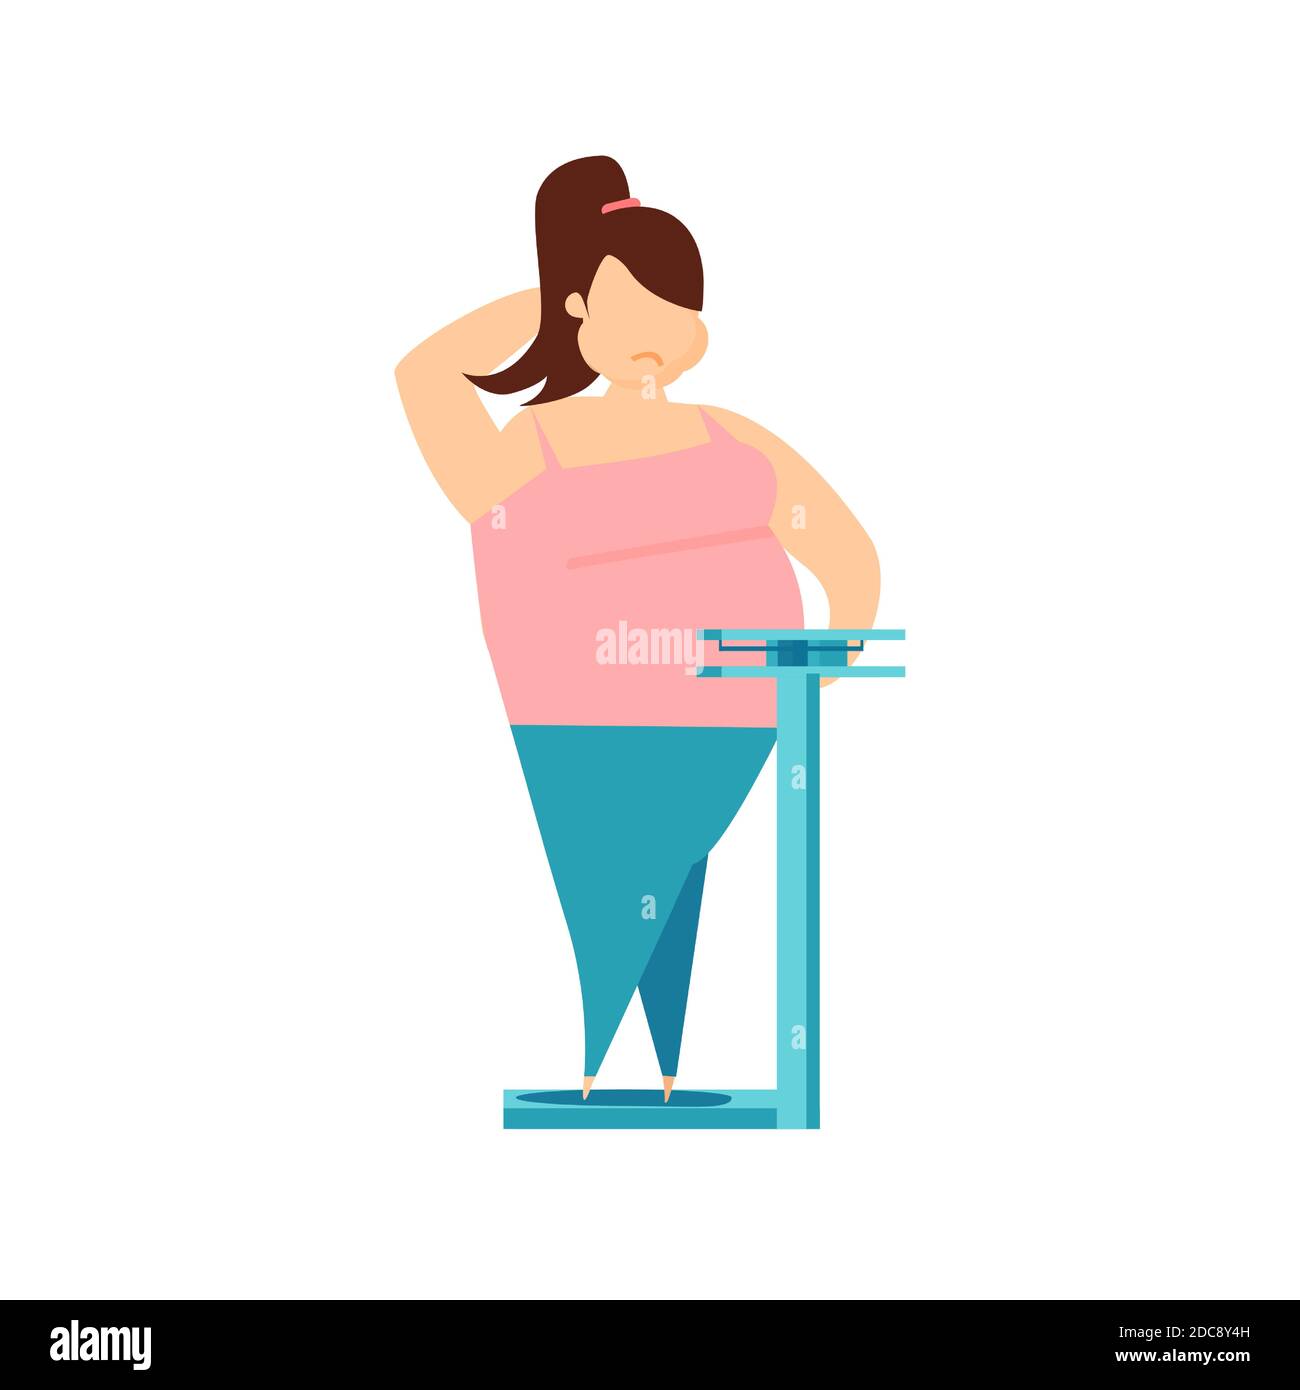 Vecteur d'une femme obèse debout sur des balances isolées sur fond blanc Illustration de Vecteur